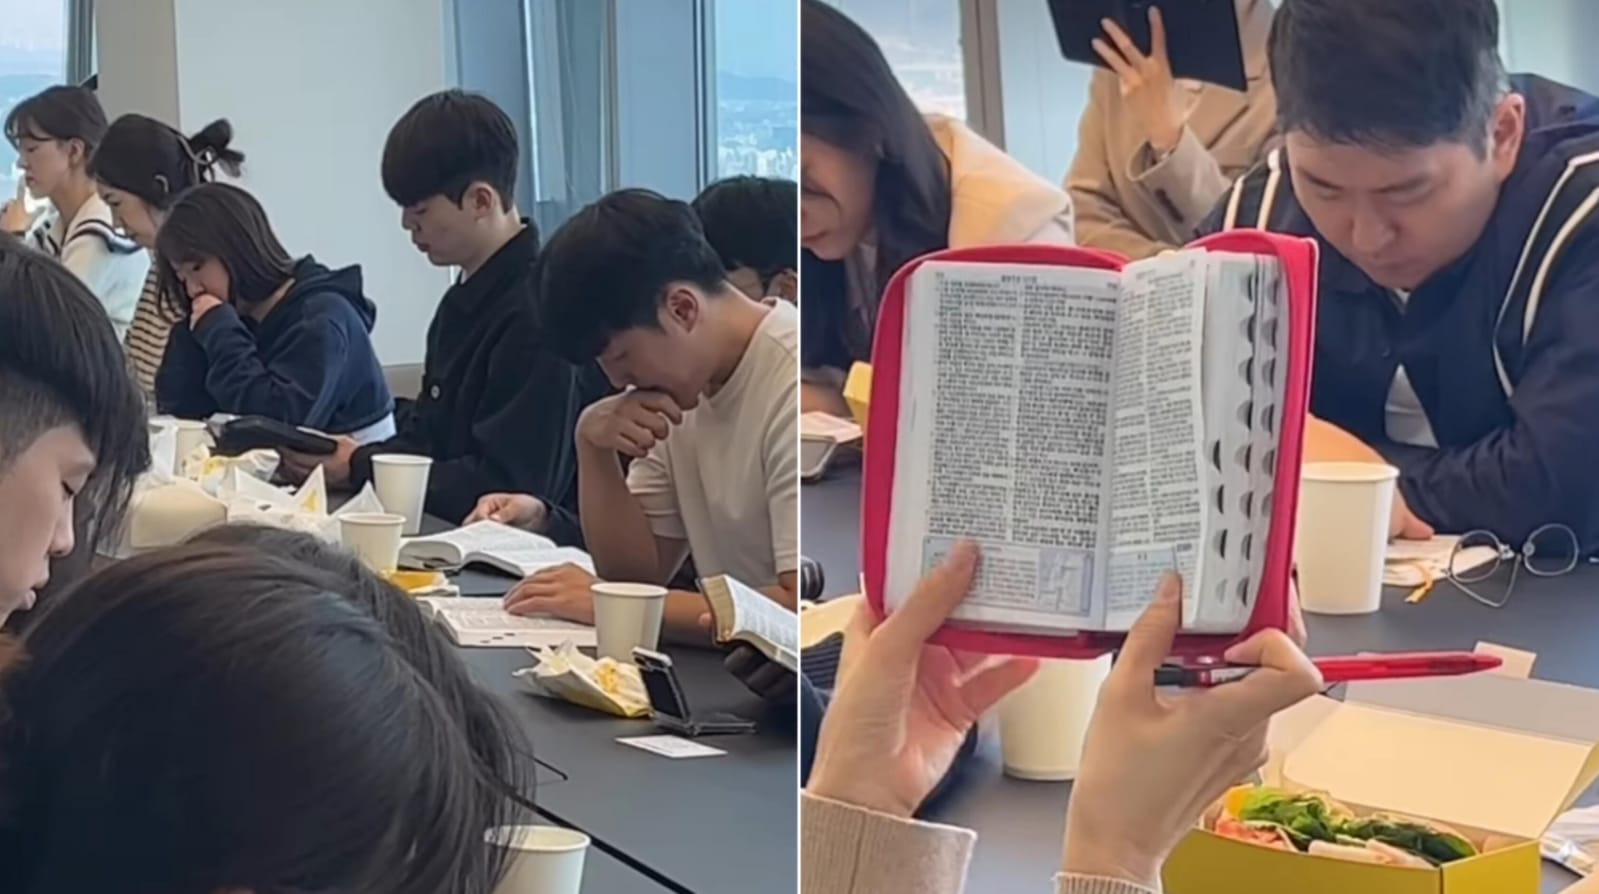 Cristãos se reúnem para lerem a Bíblia juntos na Coreia do Sul